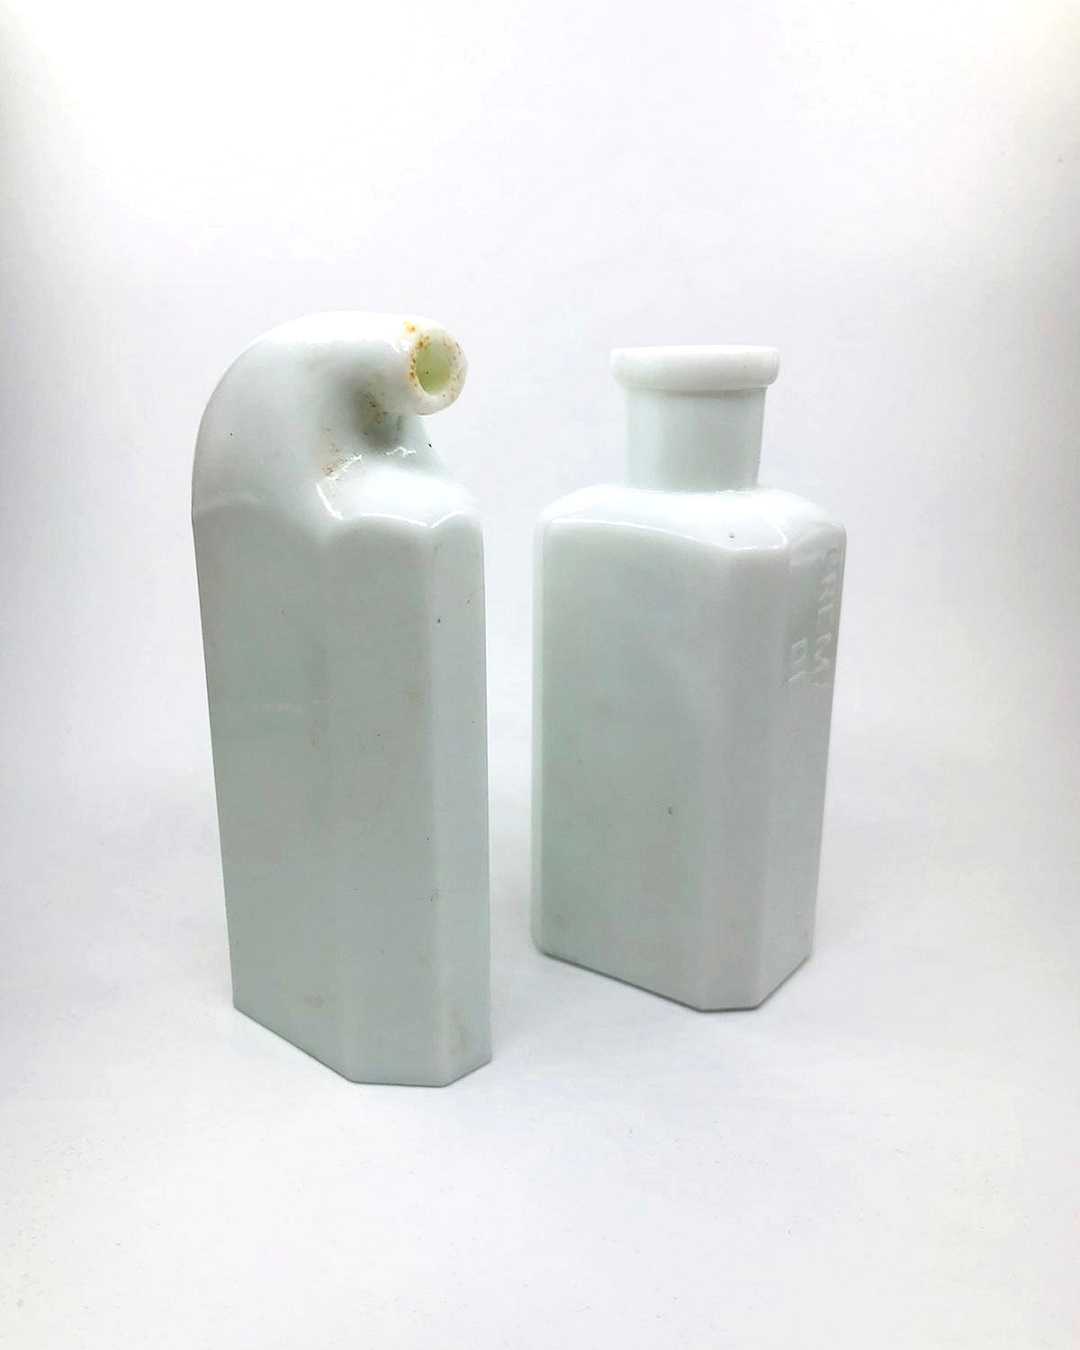 Antique milk bottles